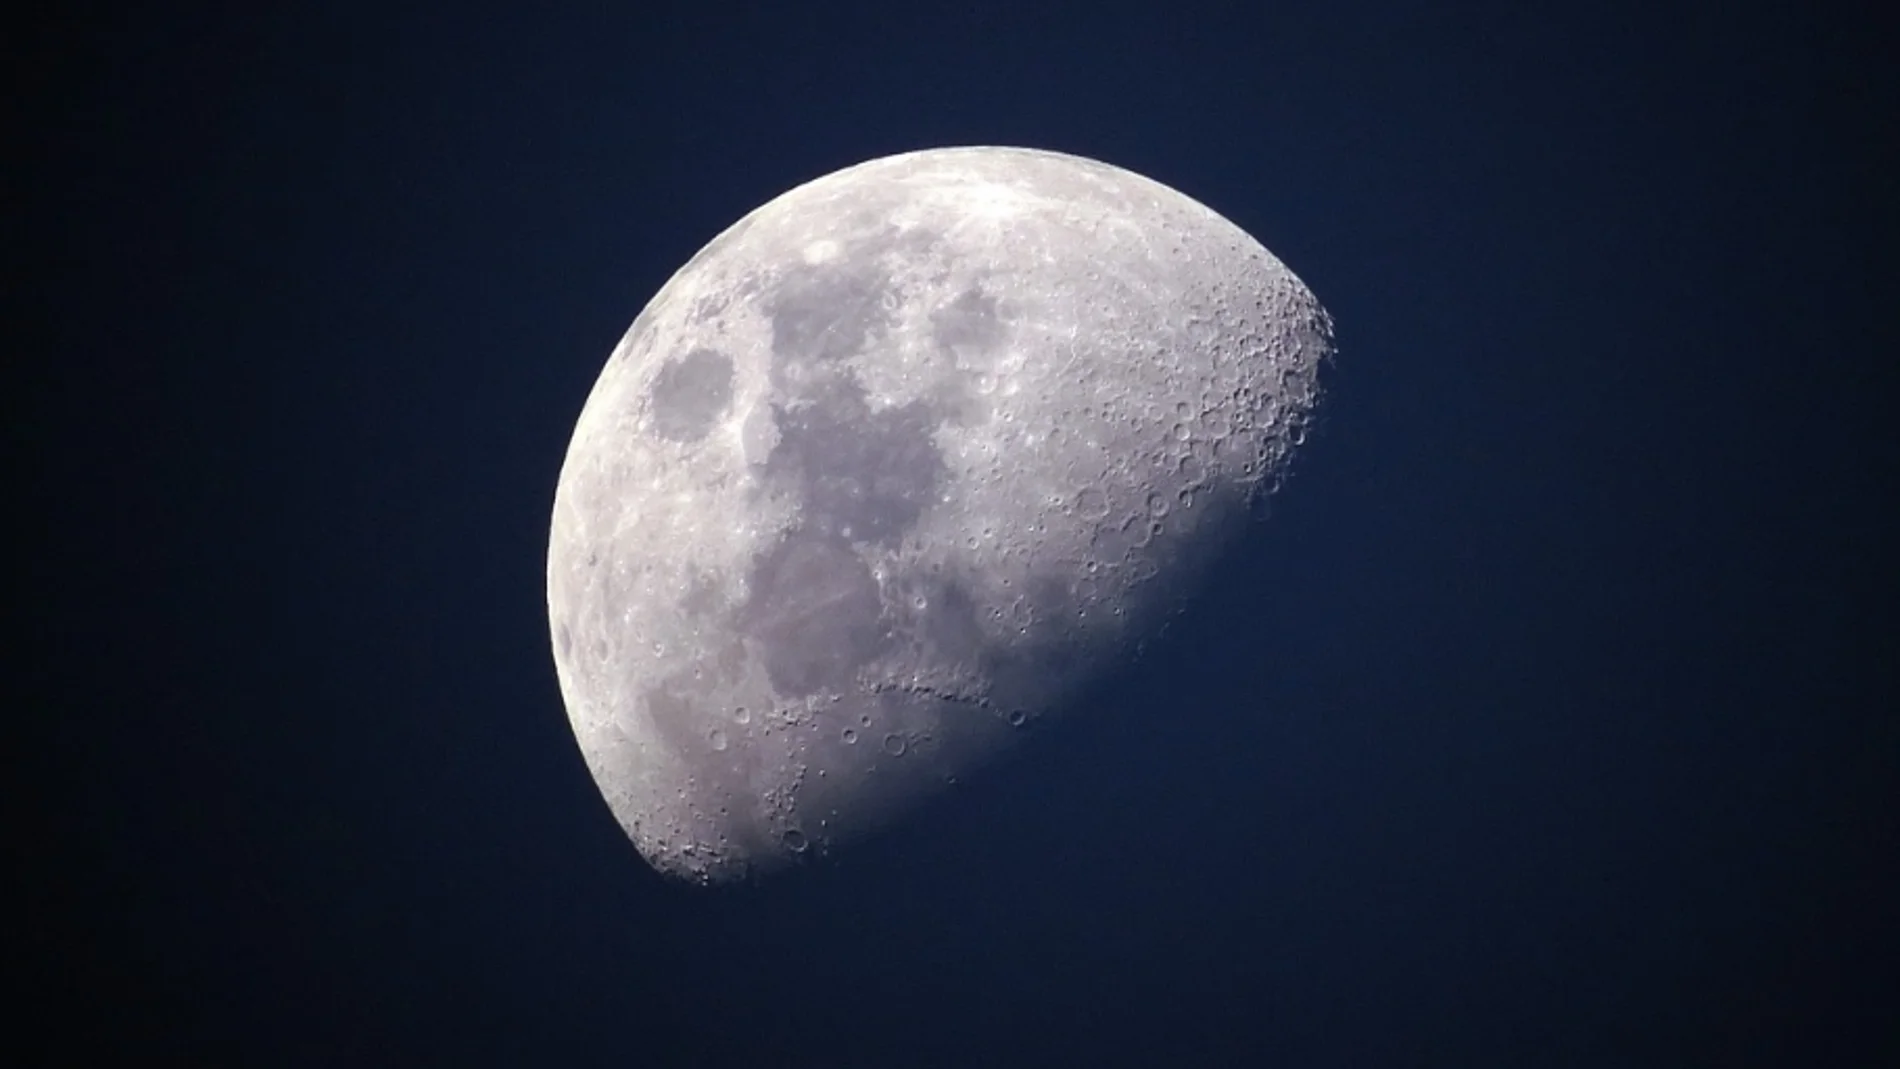 Calendario lunar de noviembre 2021: Las fases de la luna este mes